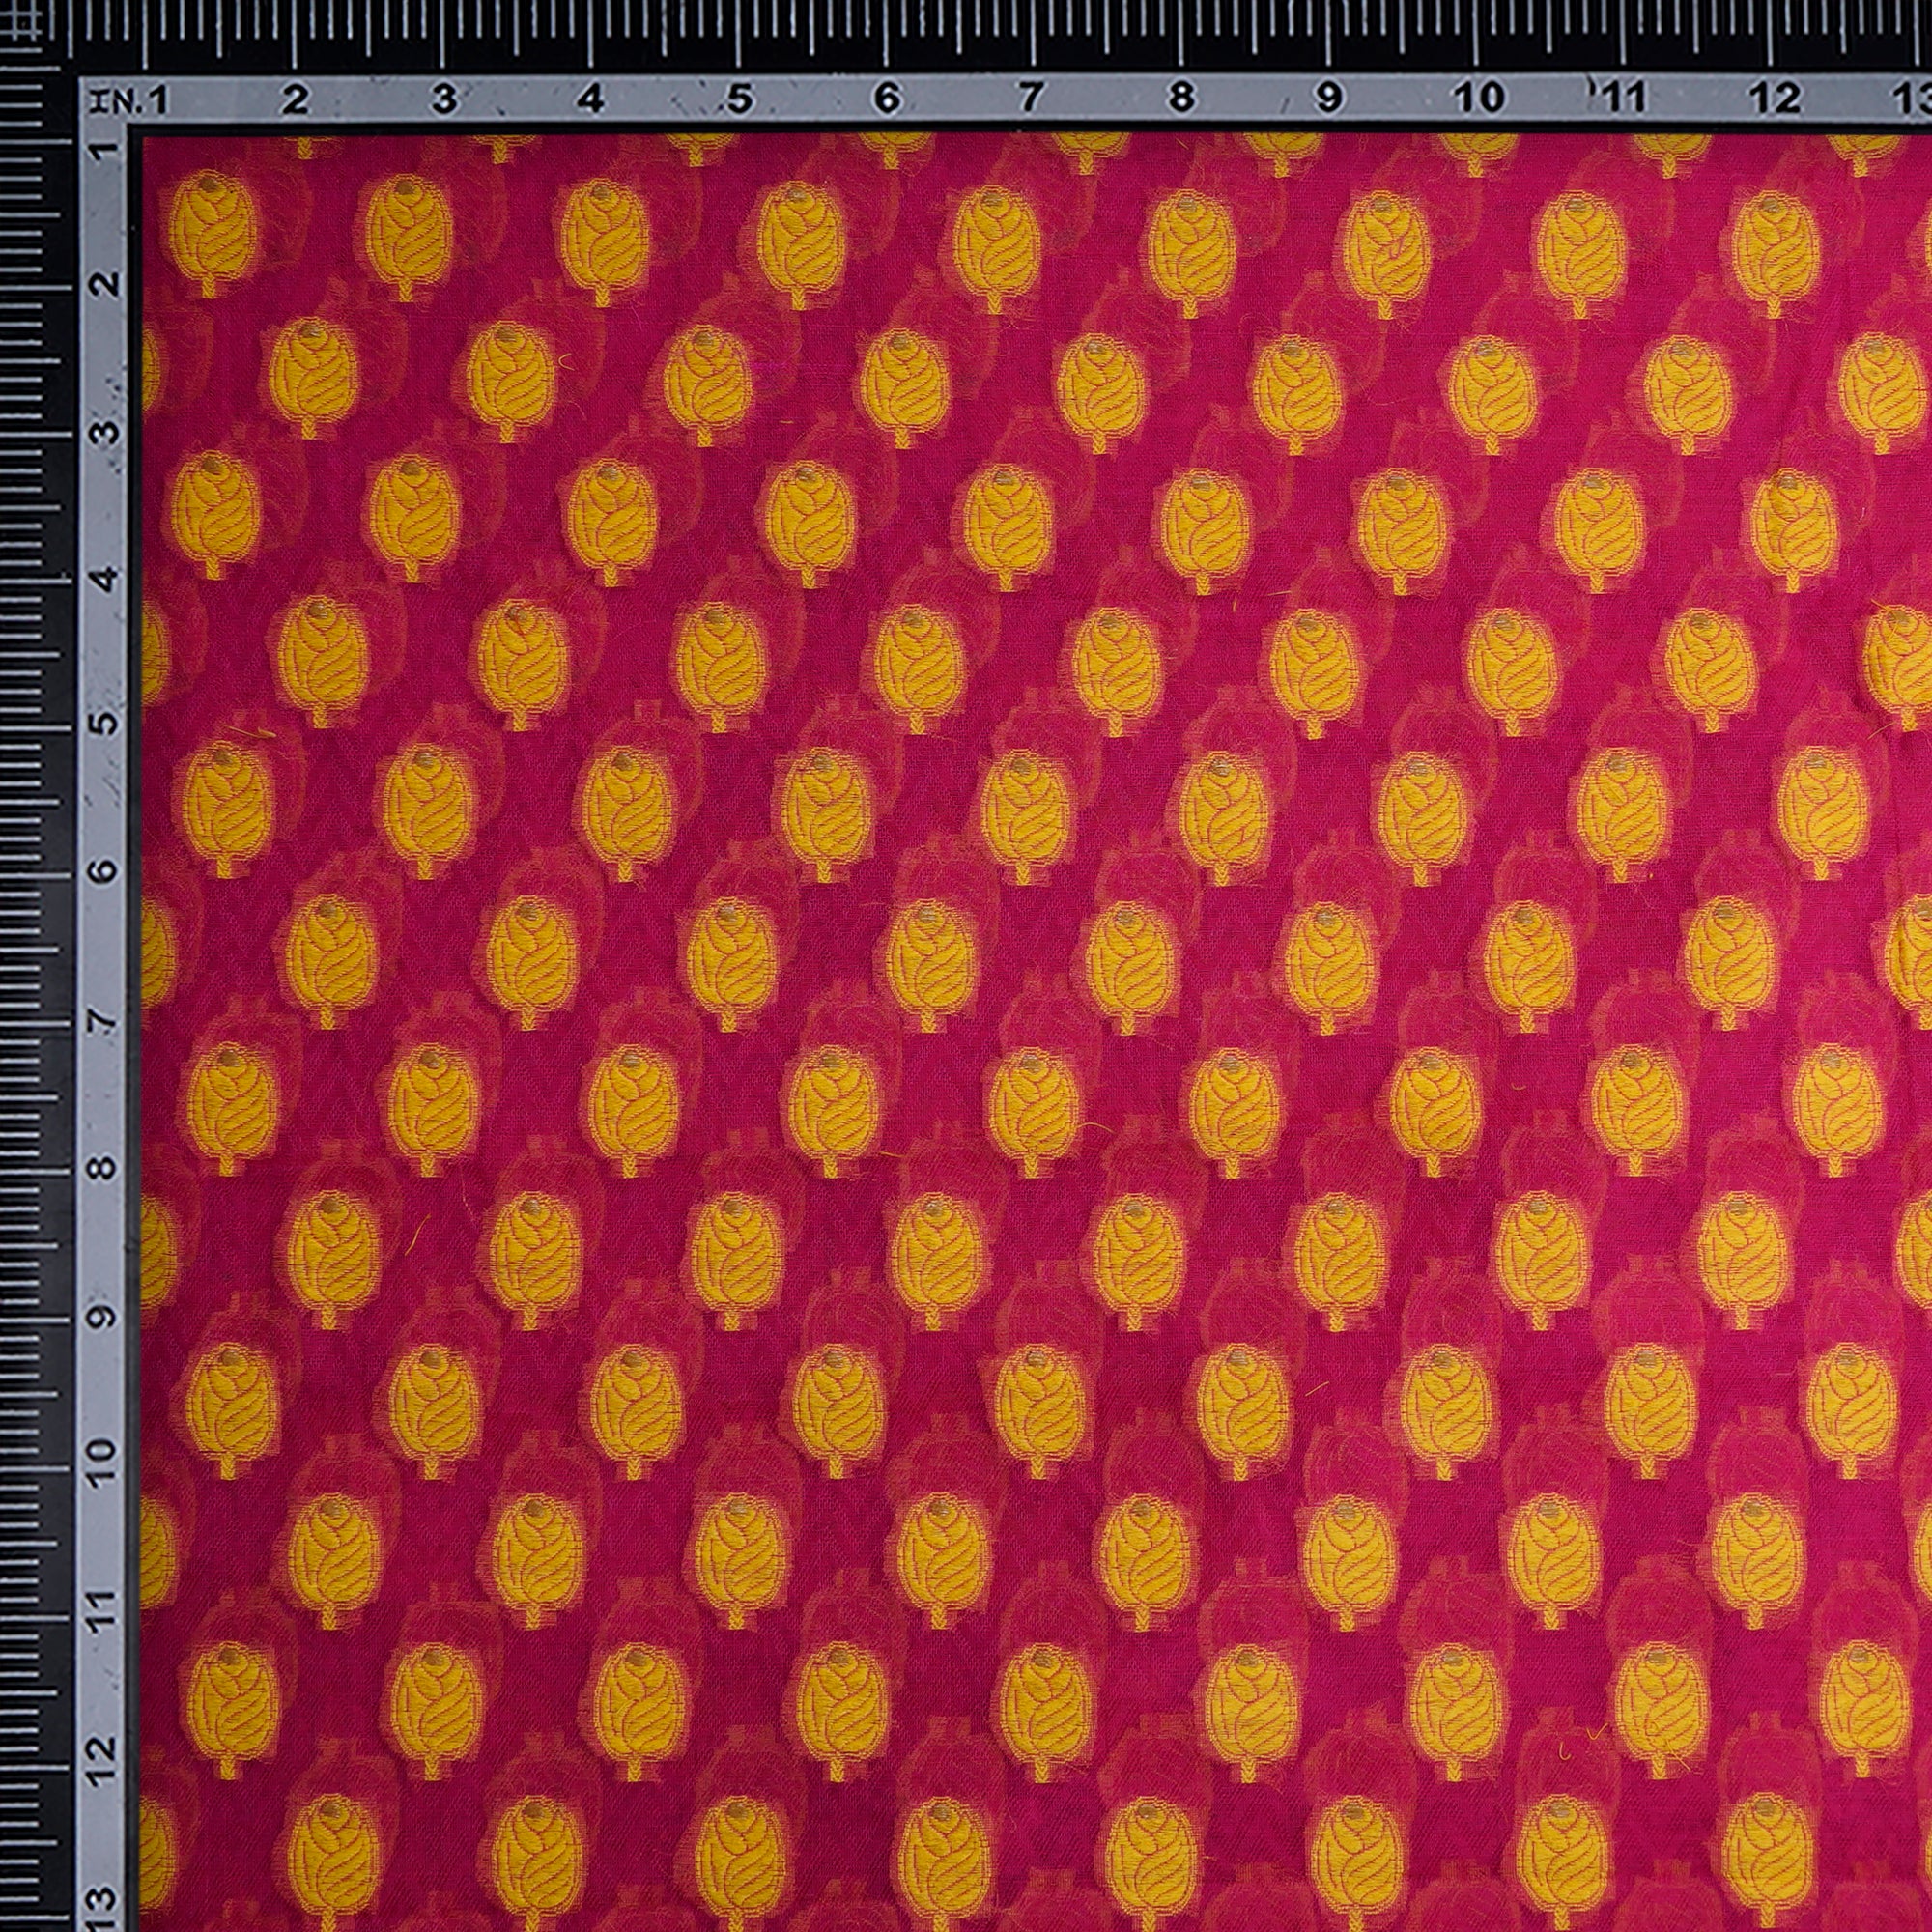 Rani Pink-Yellow Booti Pattern Handwoven Meenakari Chanderi Brocade Fabric